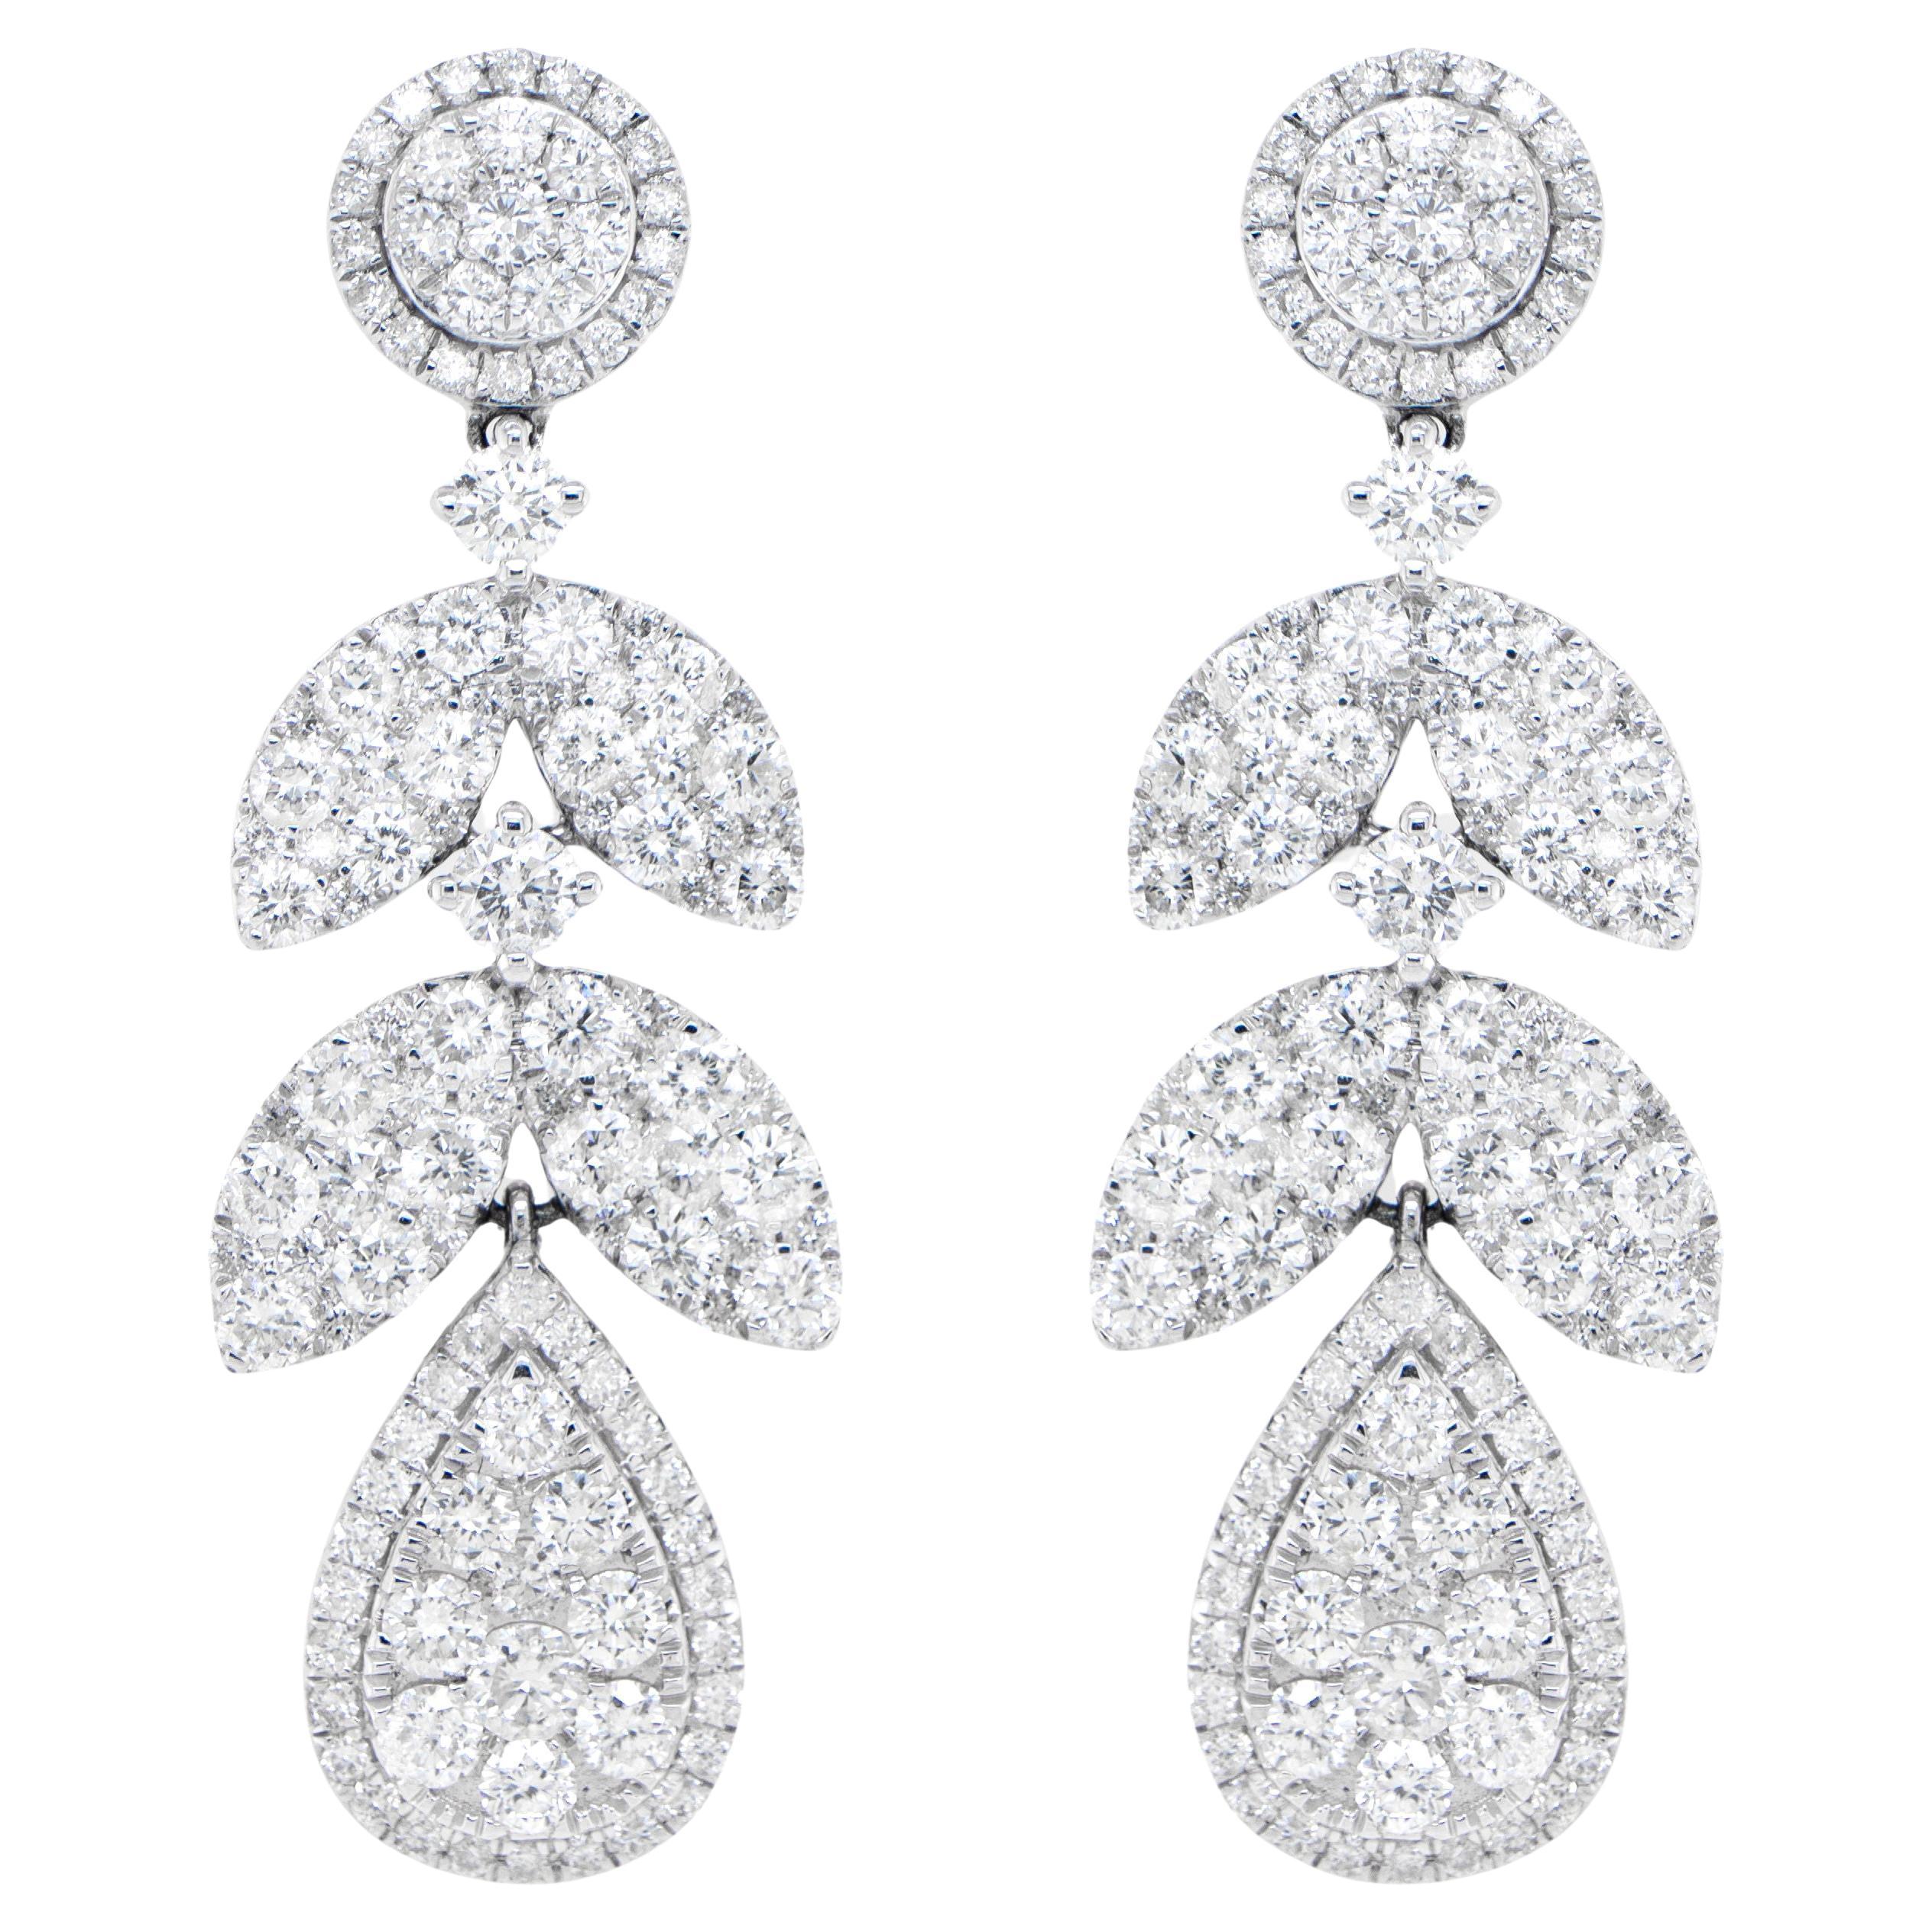 Diamond Chandelier Earrings 3.77 Carats 18K White Gold